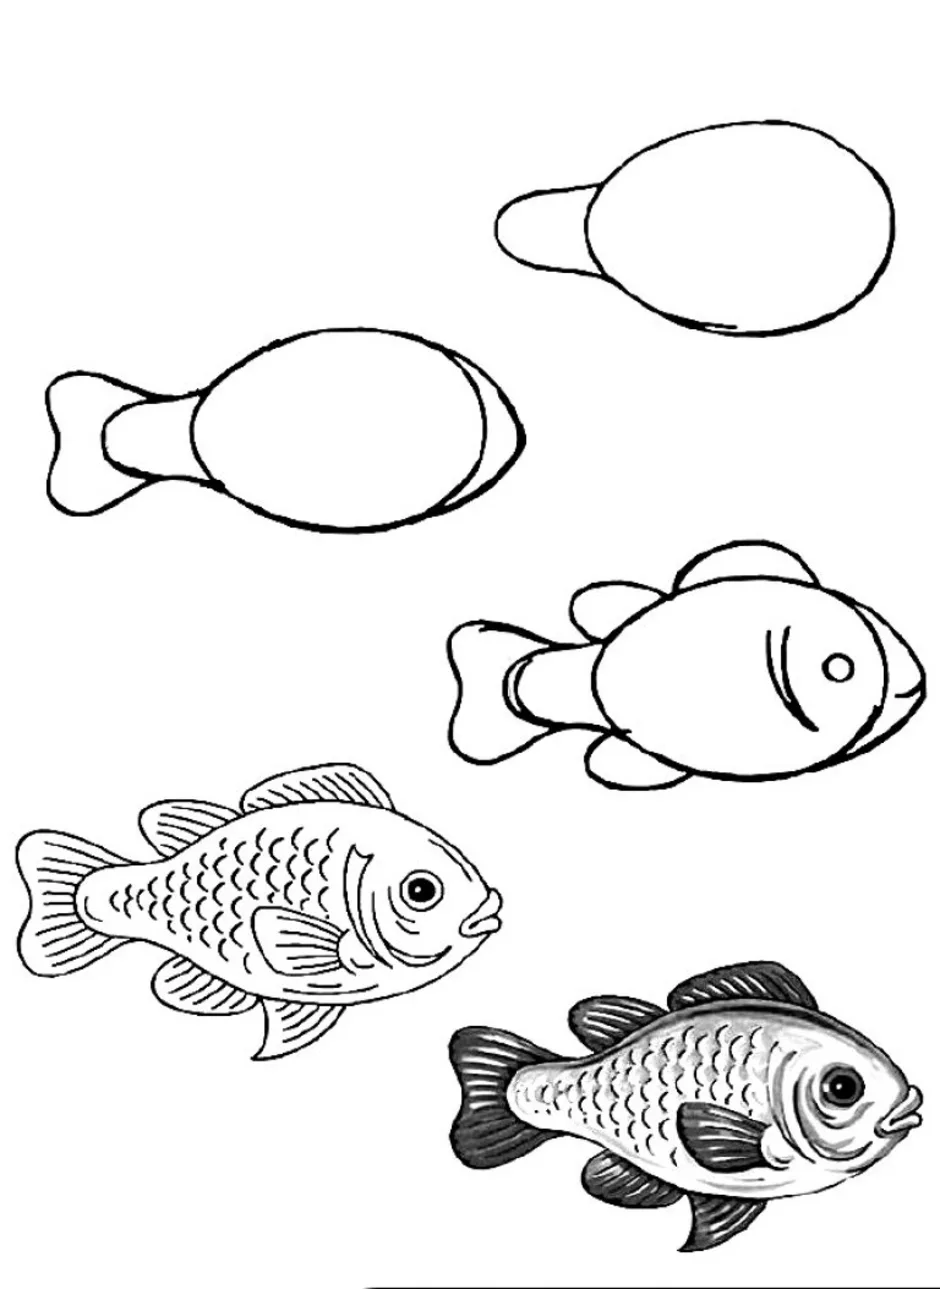 Нарисовать рыбку картинки. Рисование рыбки. Рисунок рыбы для срисовки. Поэтапное рисование рыбки. Рыбка карандашом.